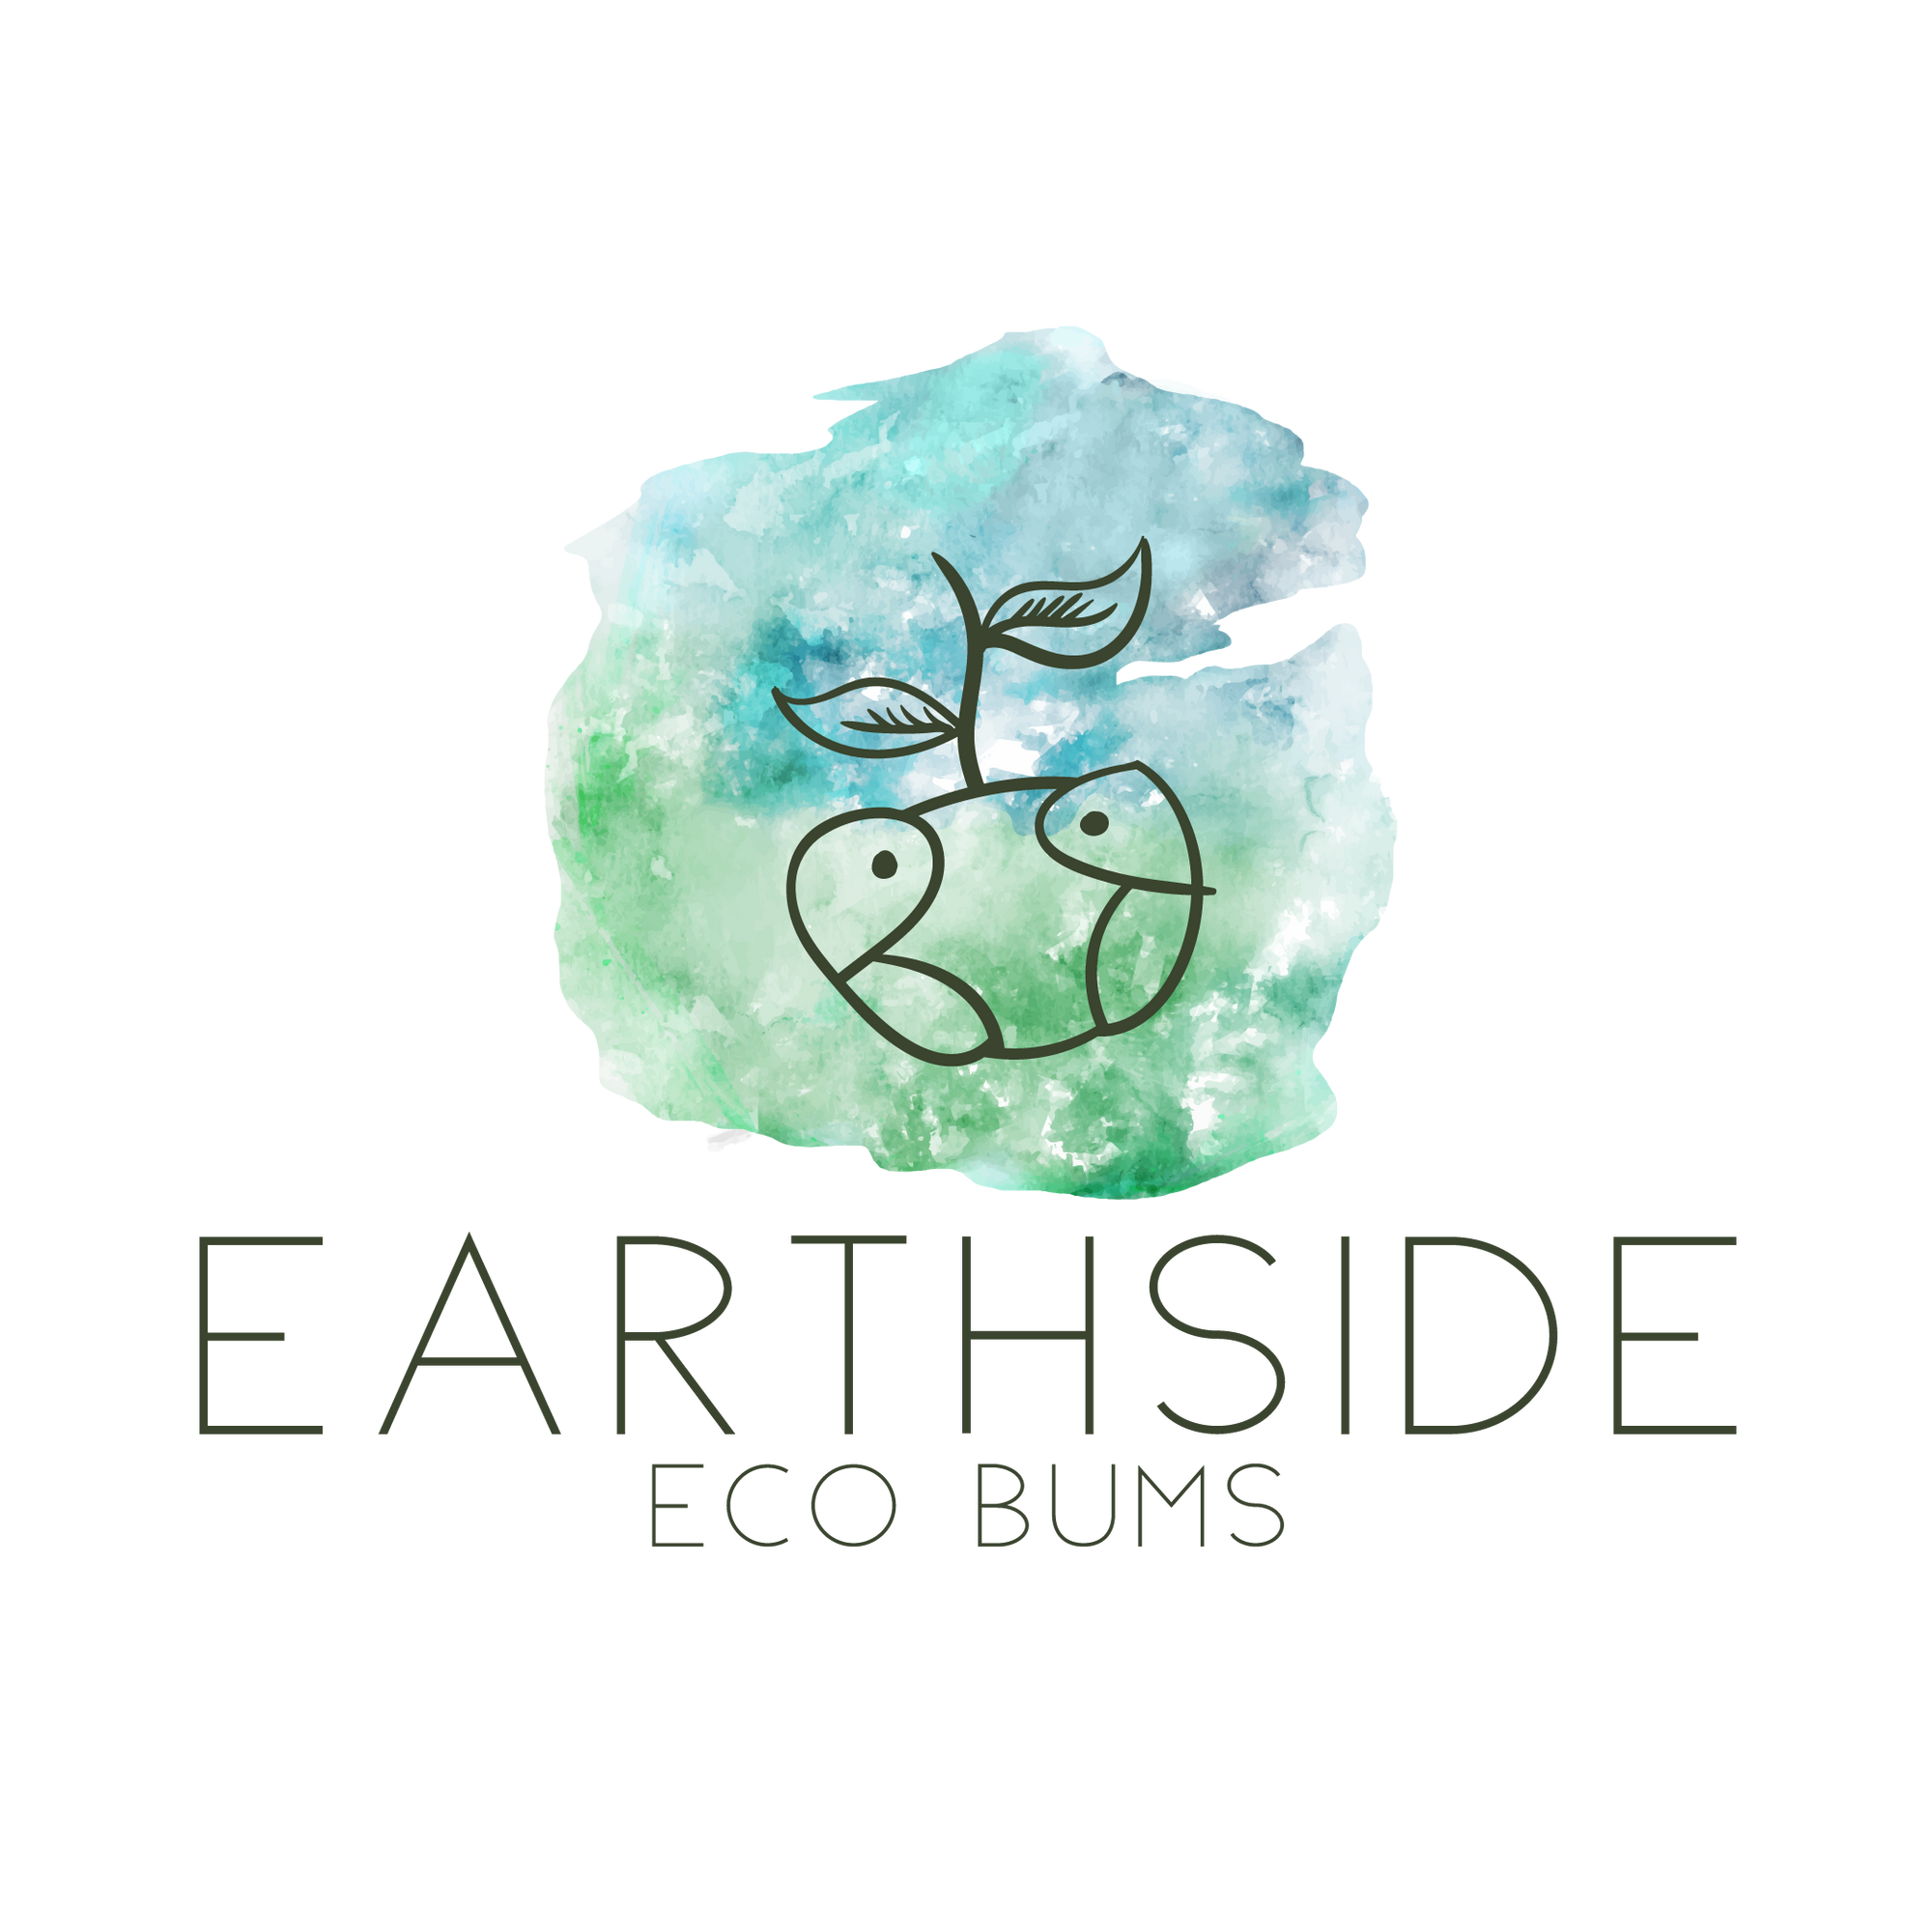 Earthside Eco Bums